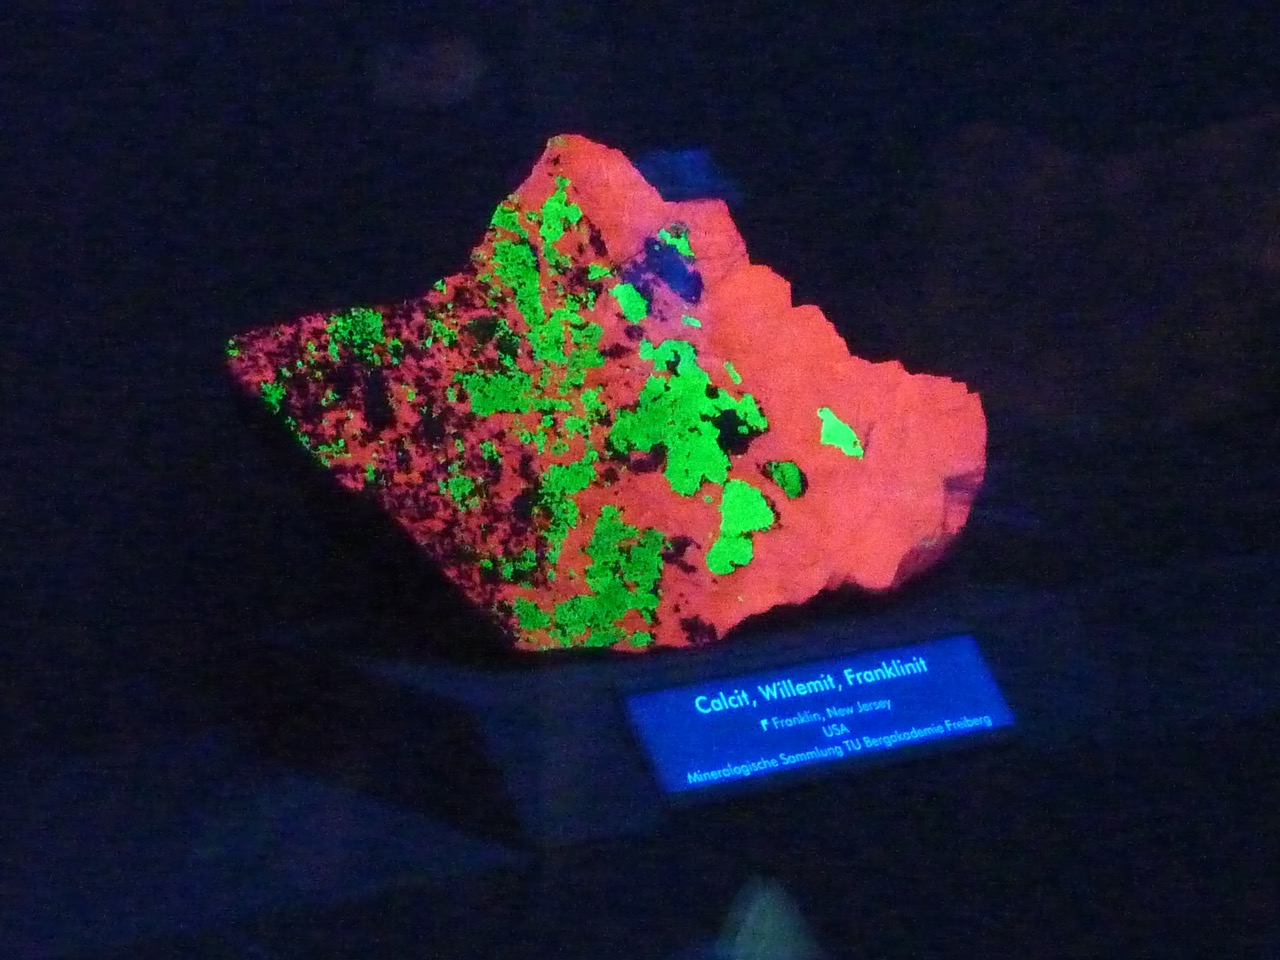 Ein eigentlich unscheinbarer Stein unter UV-Licht